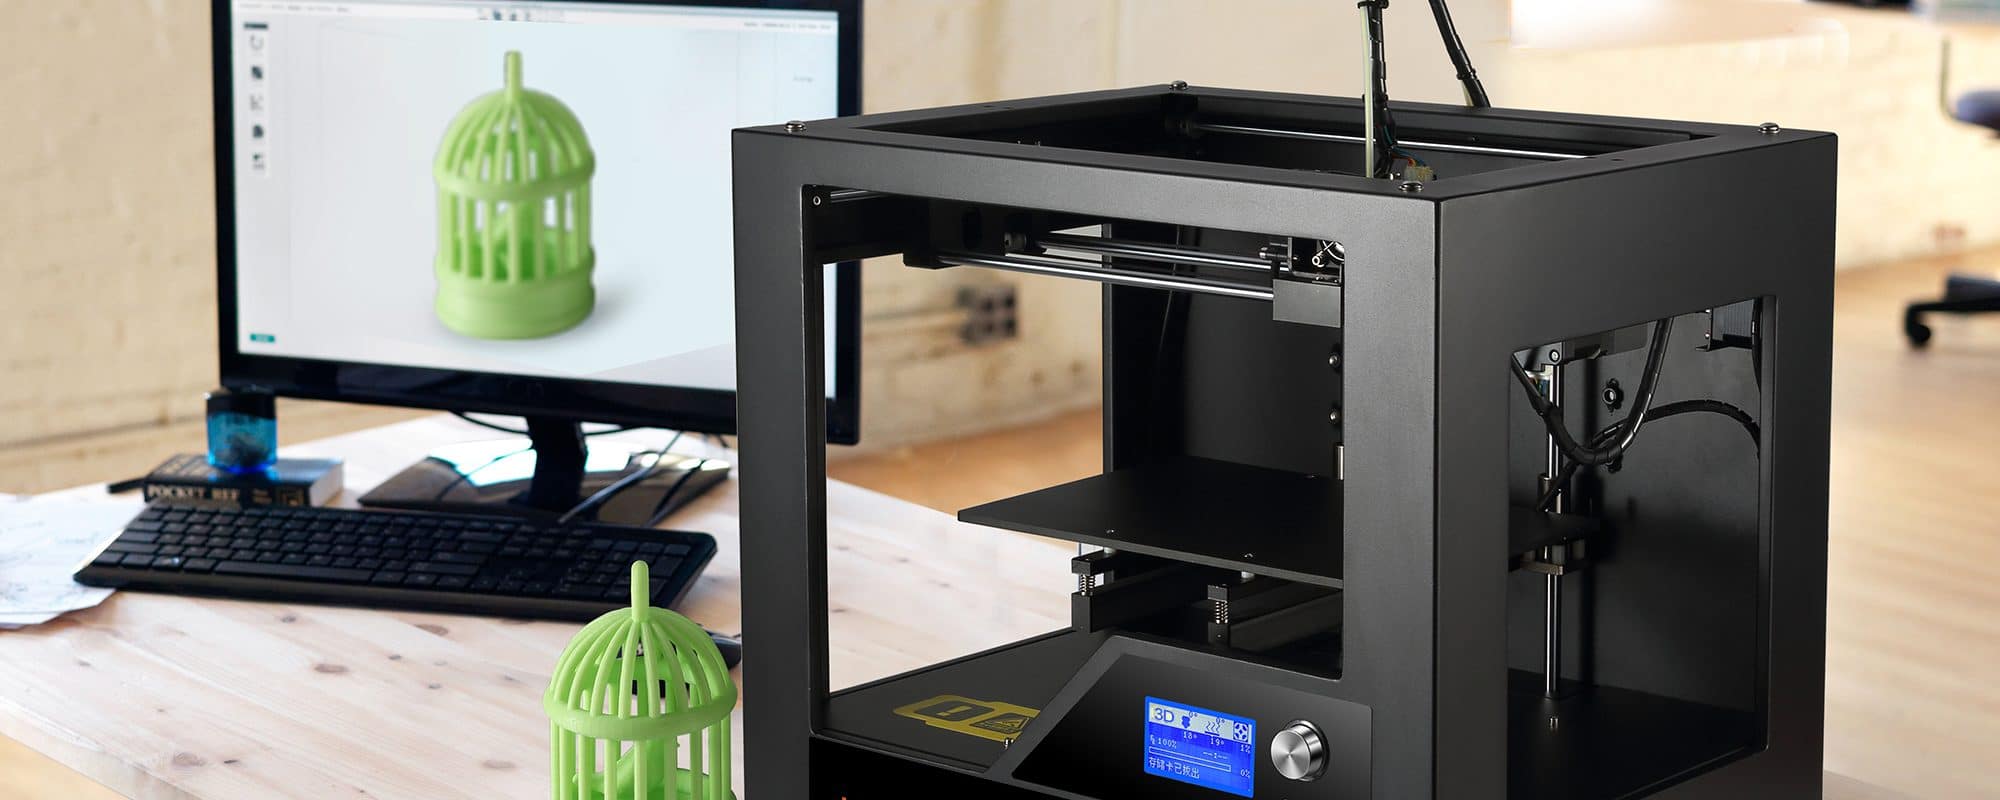 چاپگر سه بعدی تکنولوژی نوین در جهت تبدیل مجازی به حقیقی 